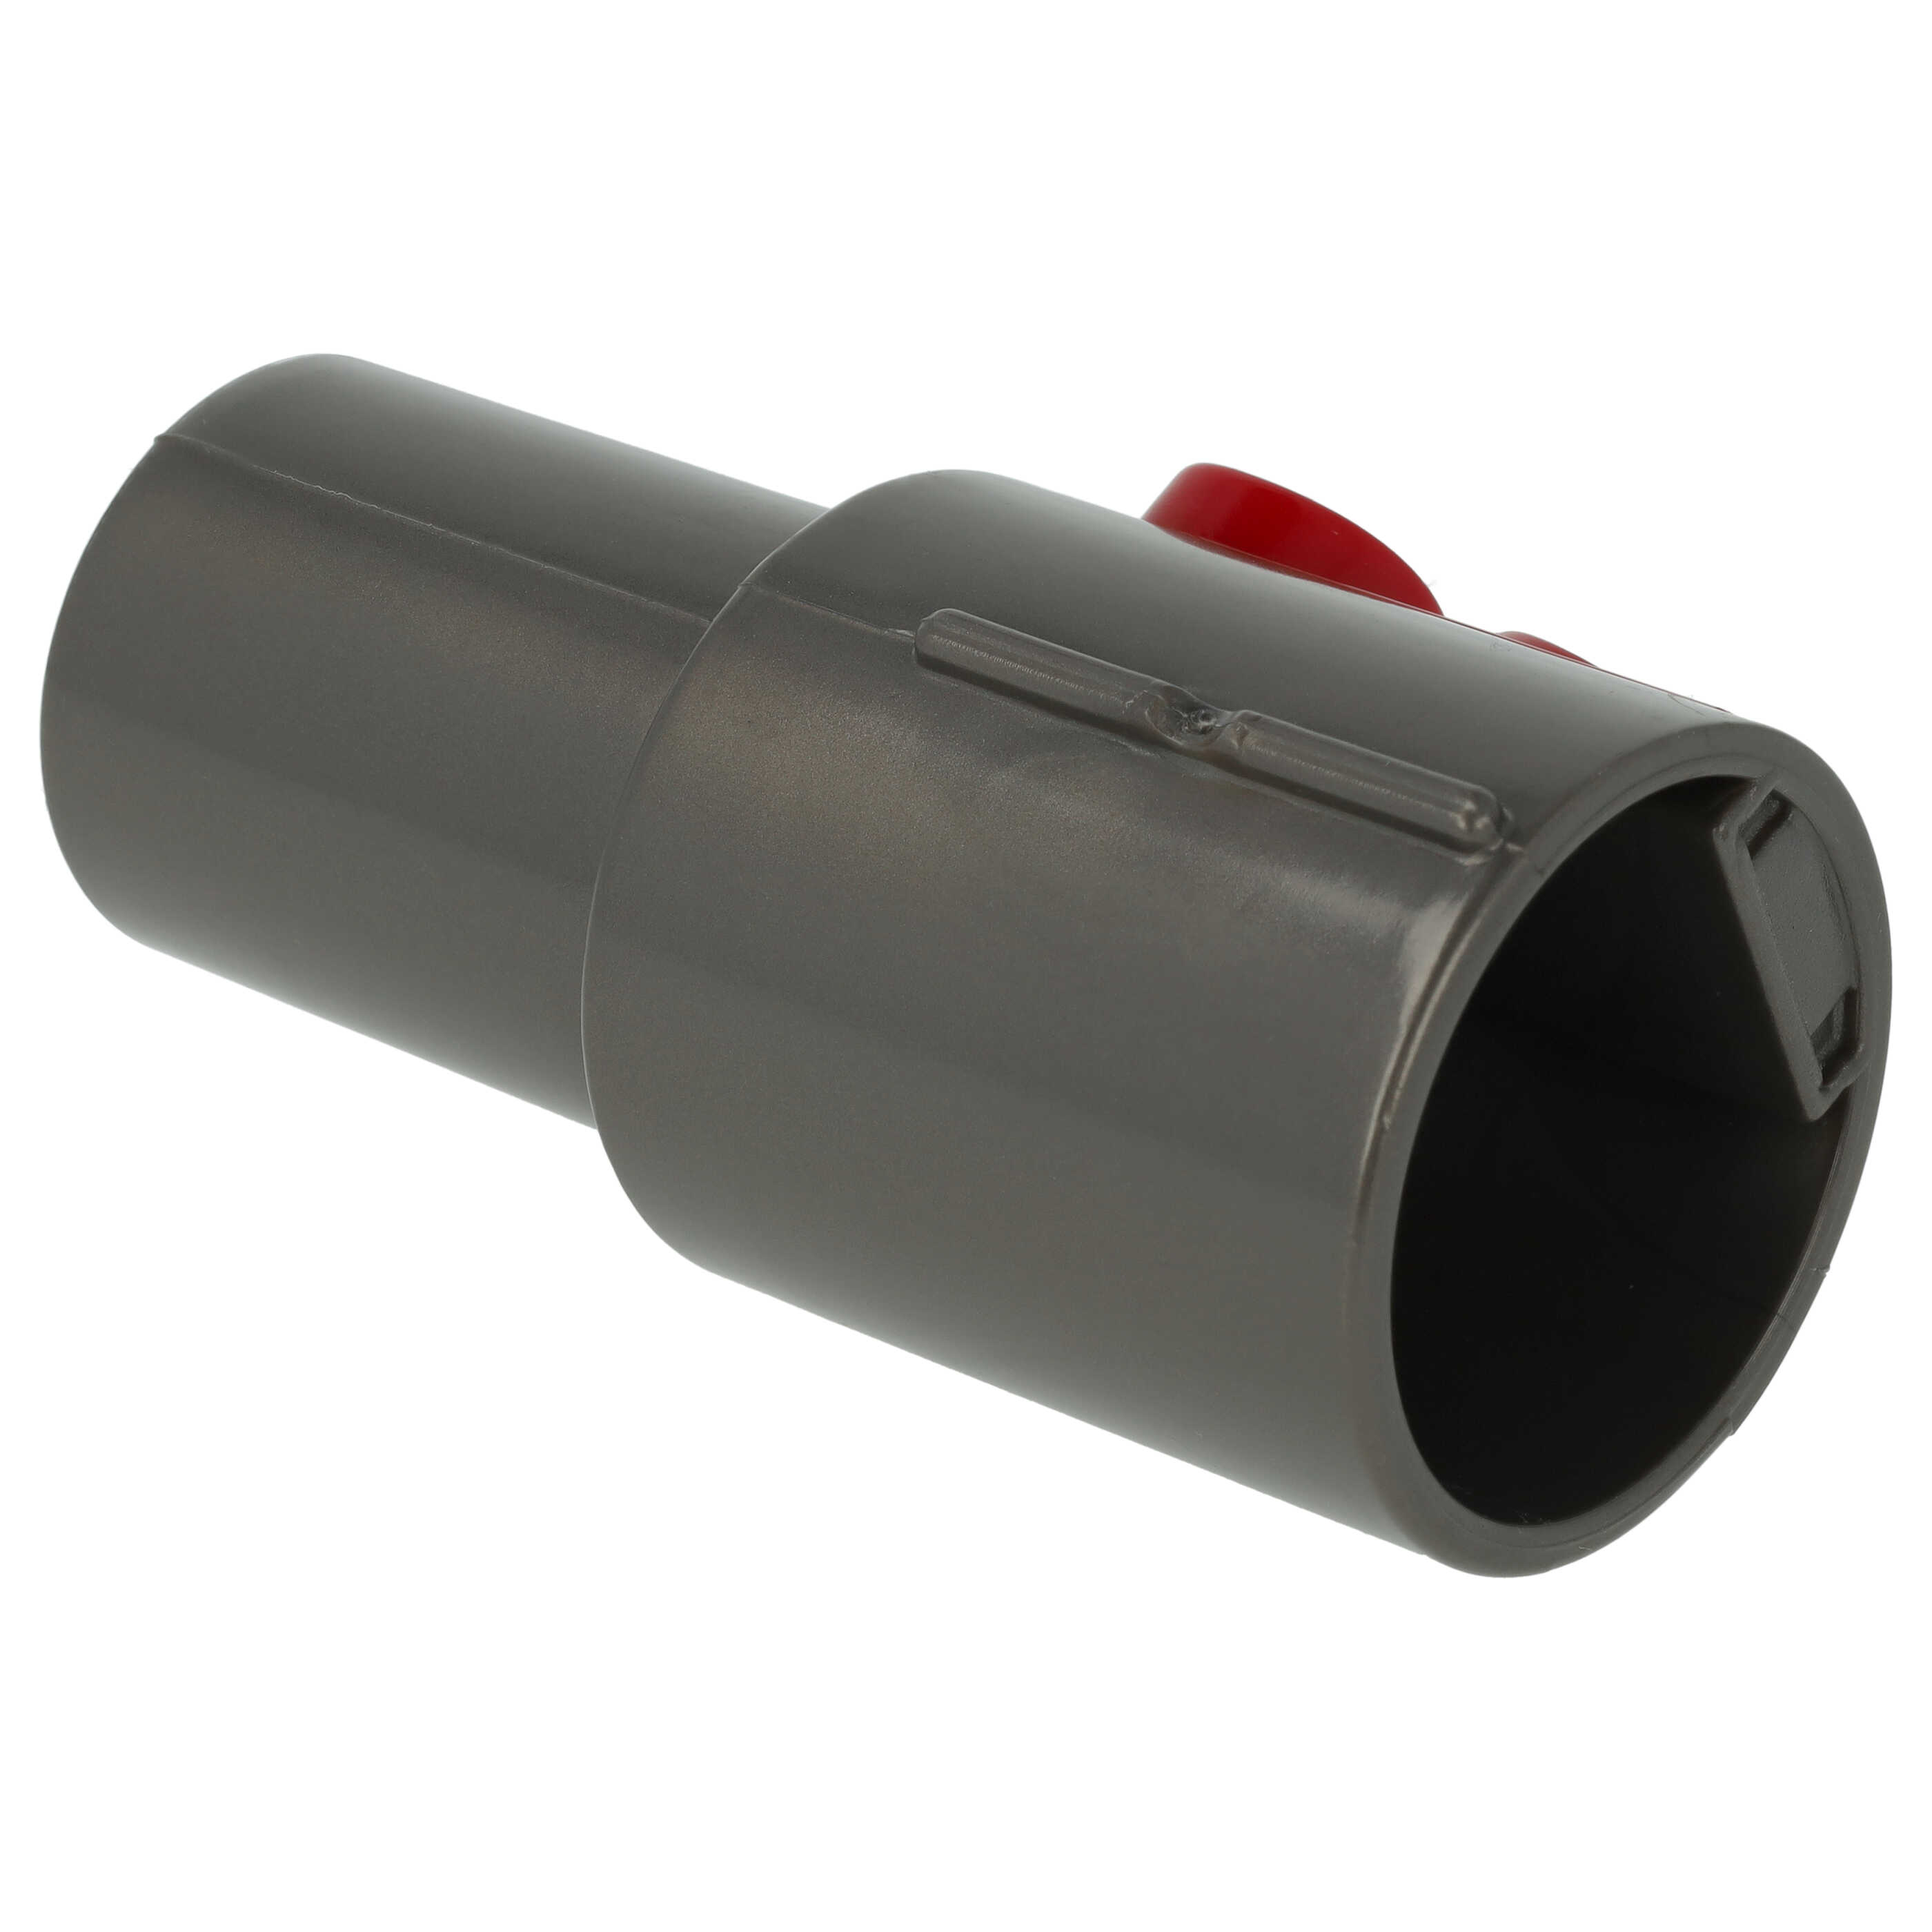 Adaptador conexión accesorios 32mm para aspiradora Cinetic - rojo / gris oscuro